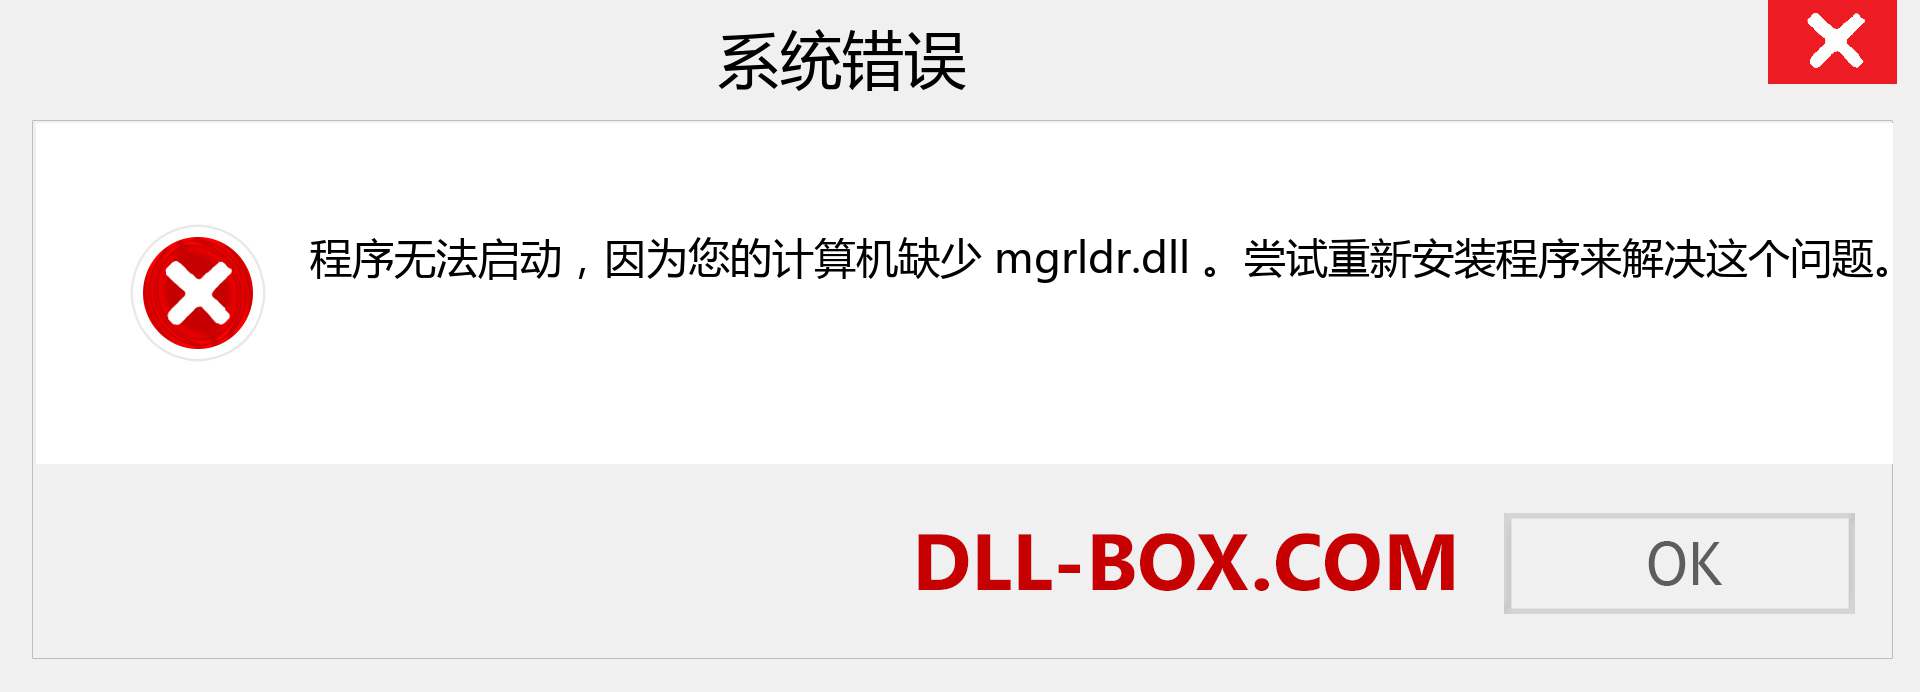 mgrldr.dll 文件丢失？。 适用于 Windows 7、8、10 的下载 - 修复 Windows、照片、图像上的 mgrldr dll 丢失错误